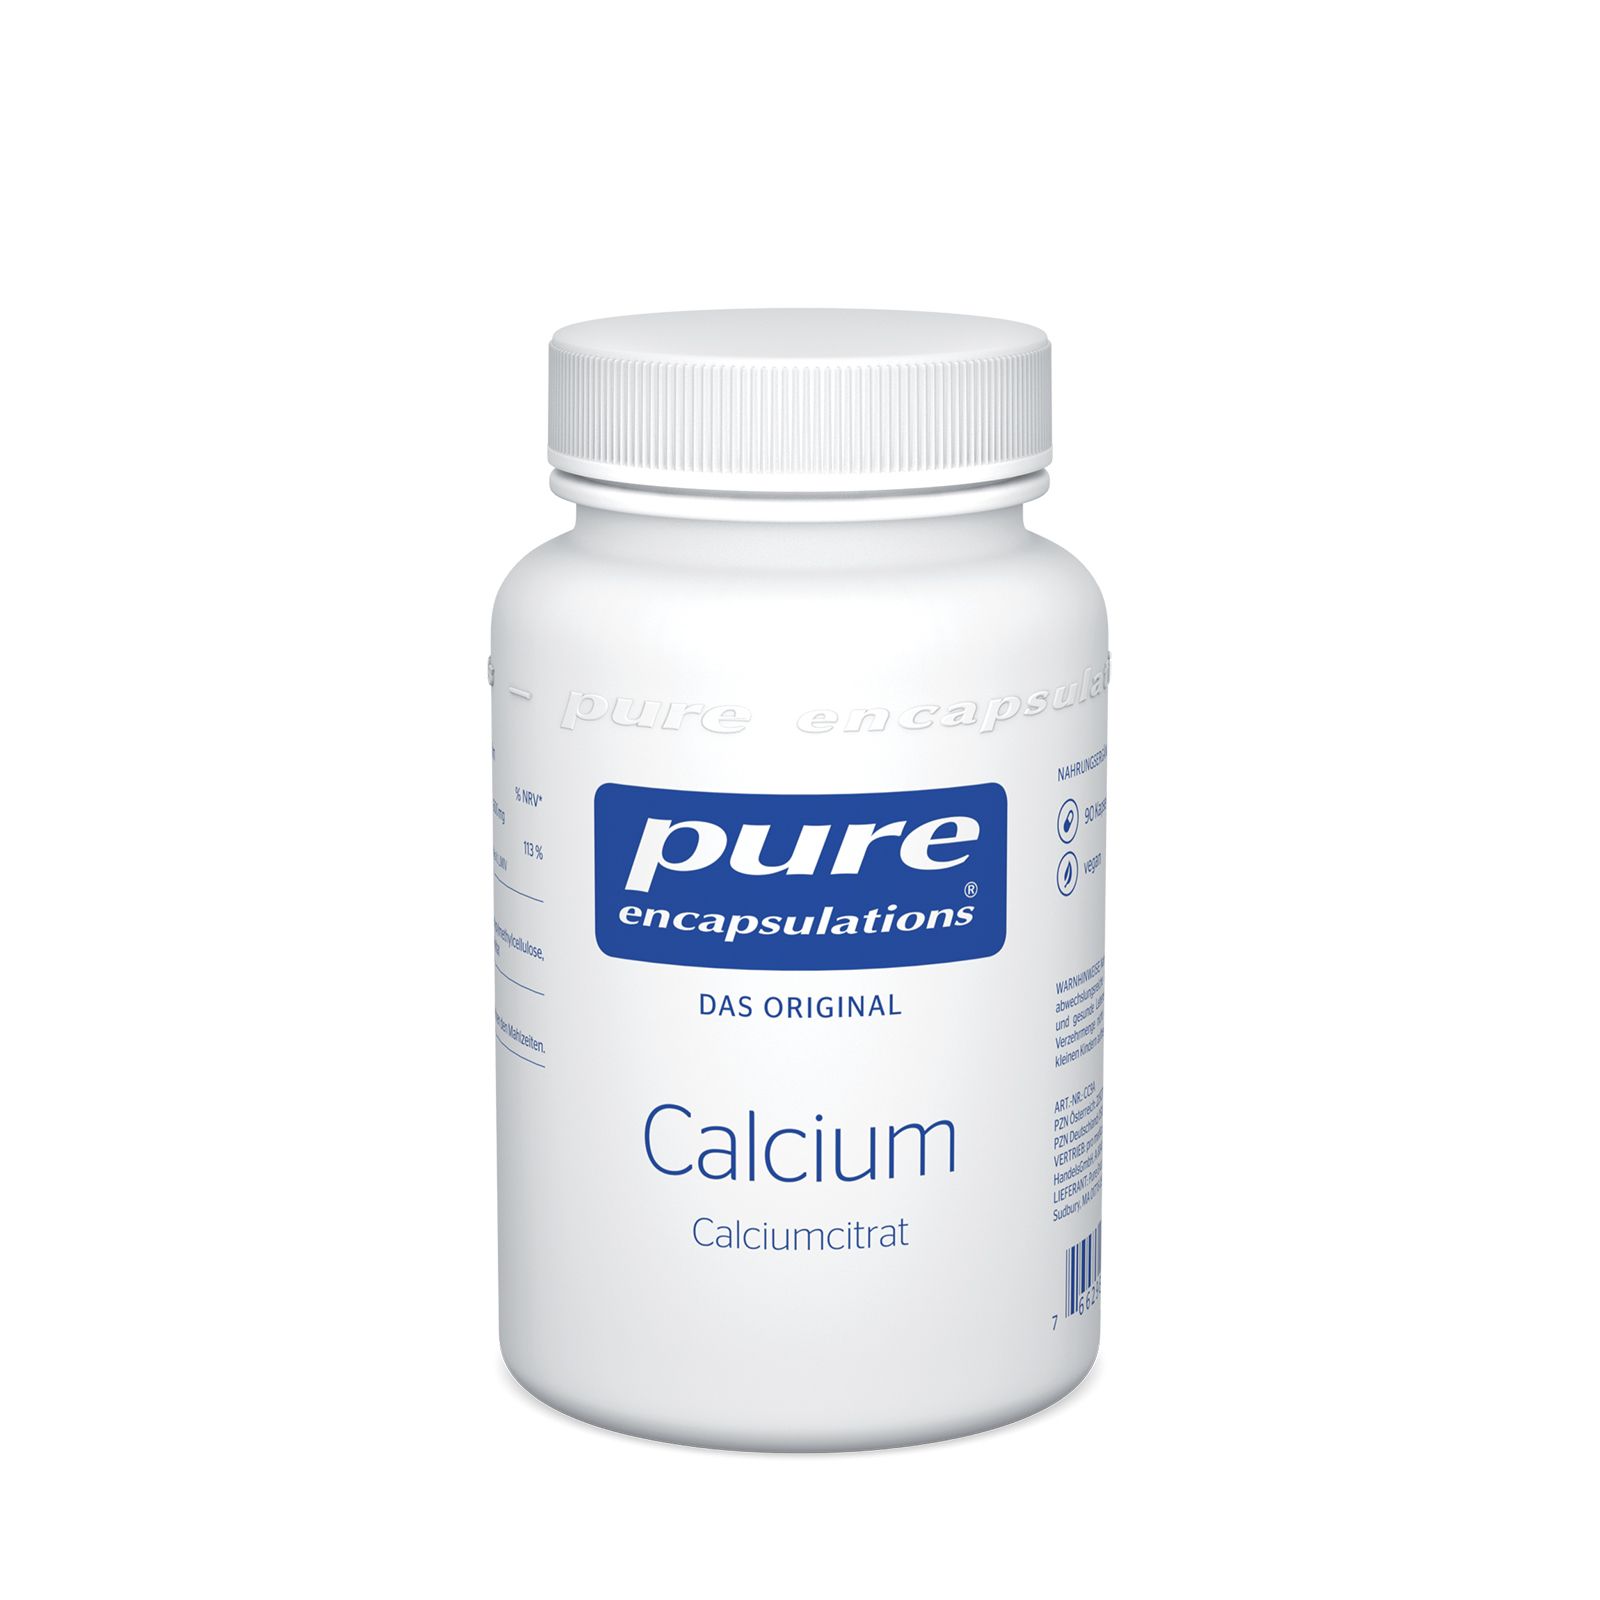 Image of pure encapsulations® Calcium (Calciumcitrat)